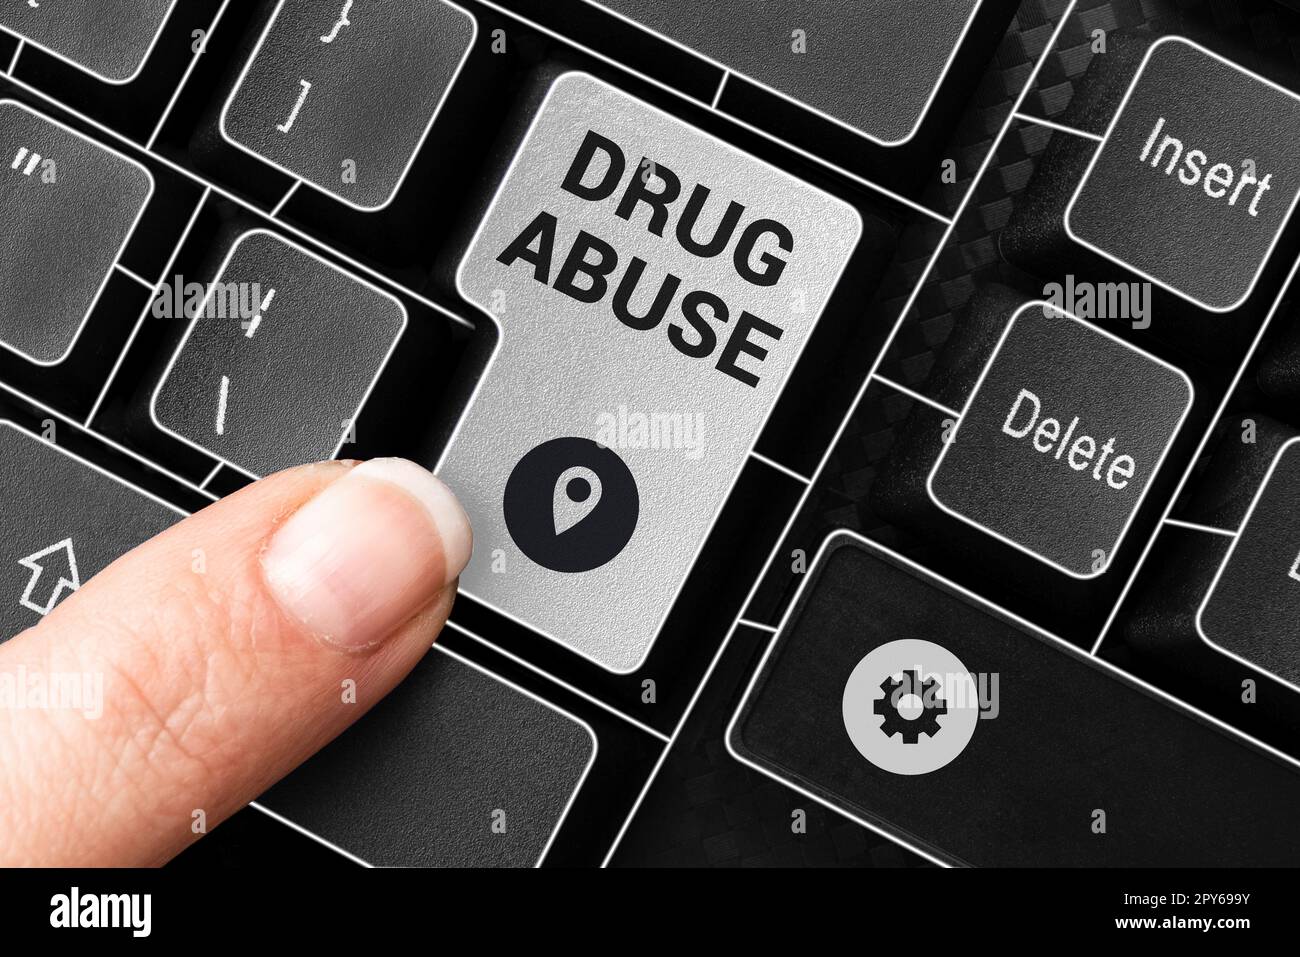 Konzeptionelle Darstellung des Drogenmissbrauchs. Begriff "zwanghafte Droge" auf der Suche nach dem gewohnheitsmäßigen Konsum illegaler Drogen Stockfoto